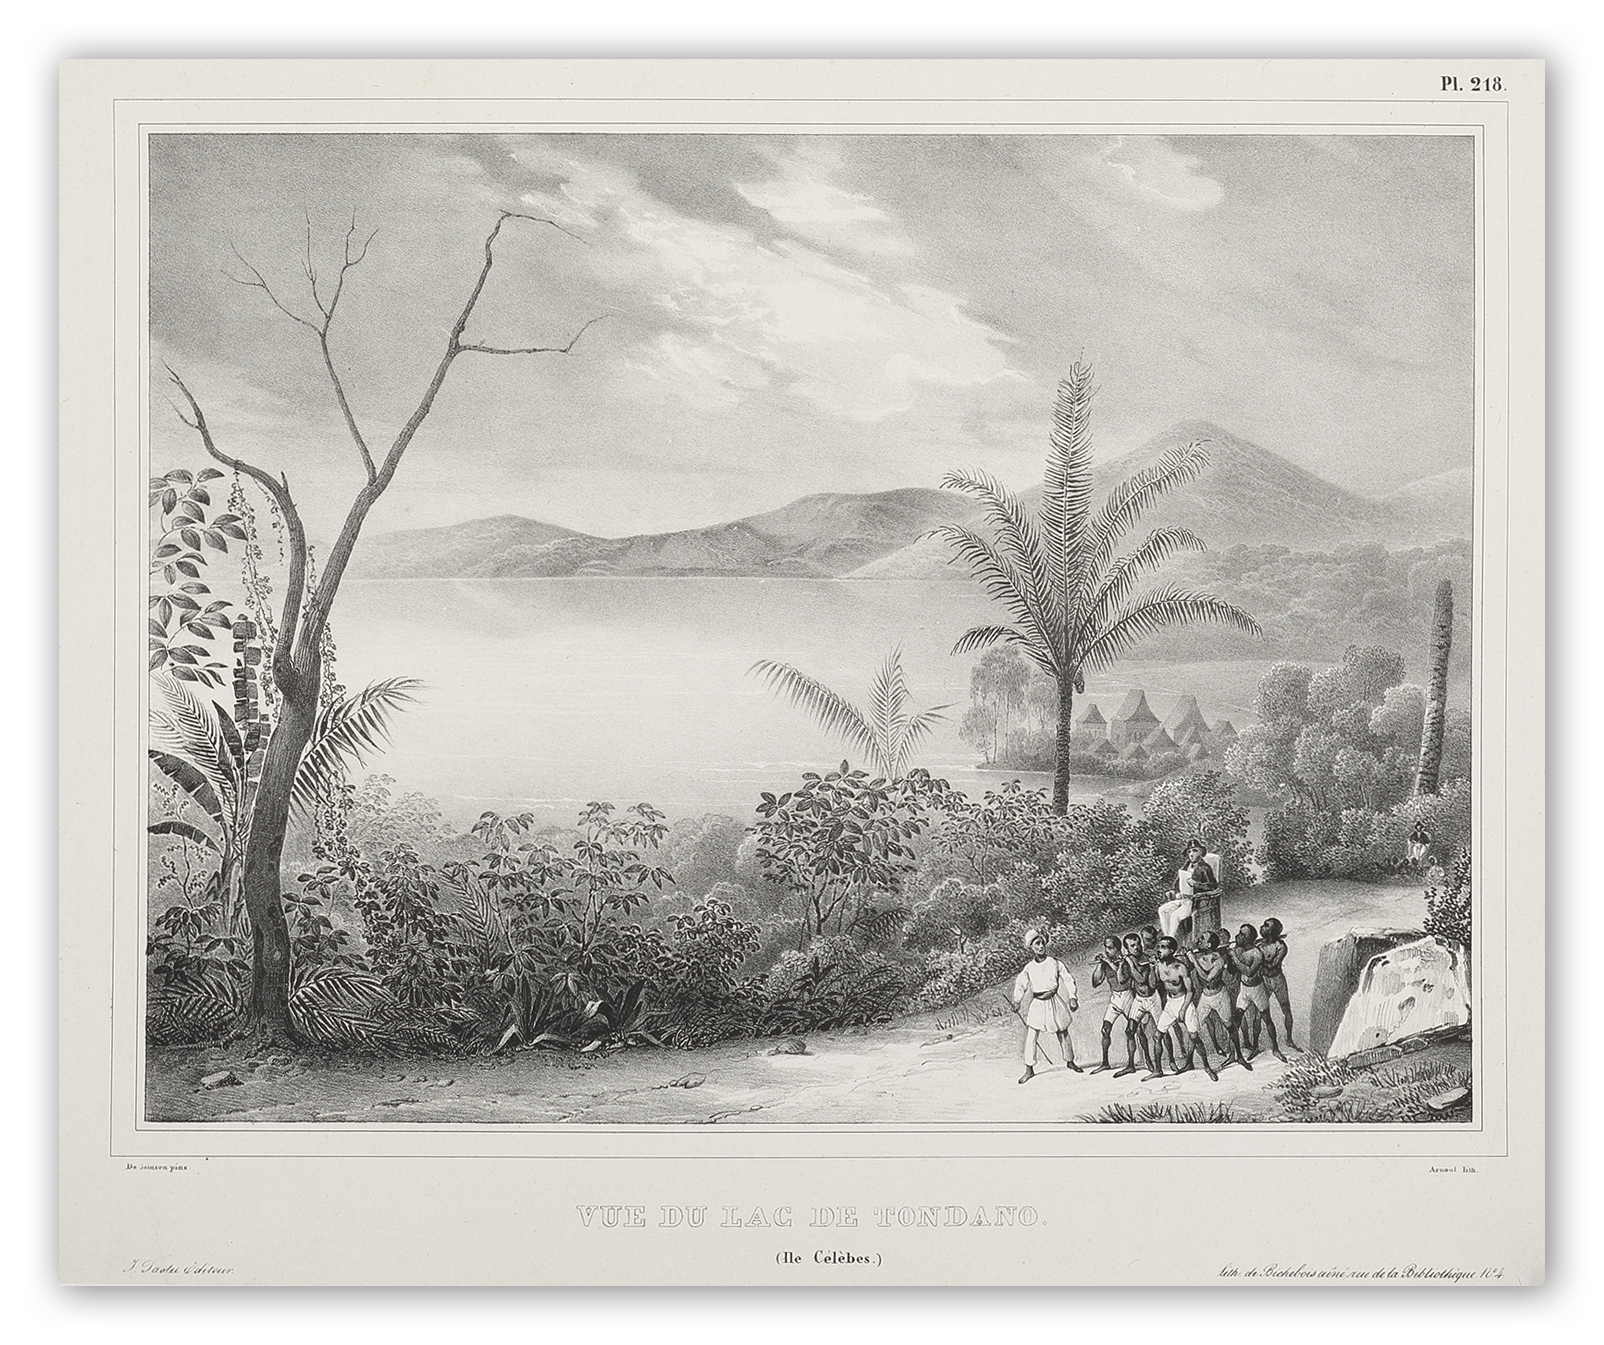 Vue du Lac de Tondano. (Ile Celebes.) - Antique View from 1833